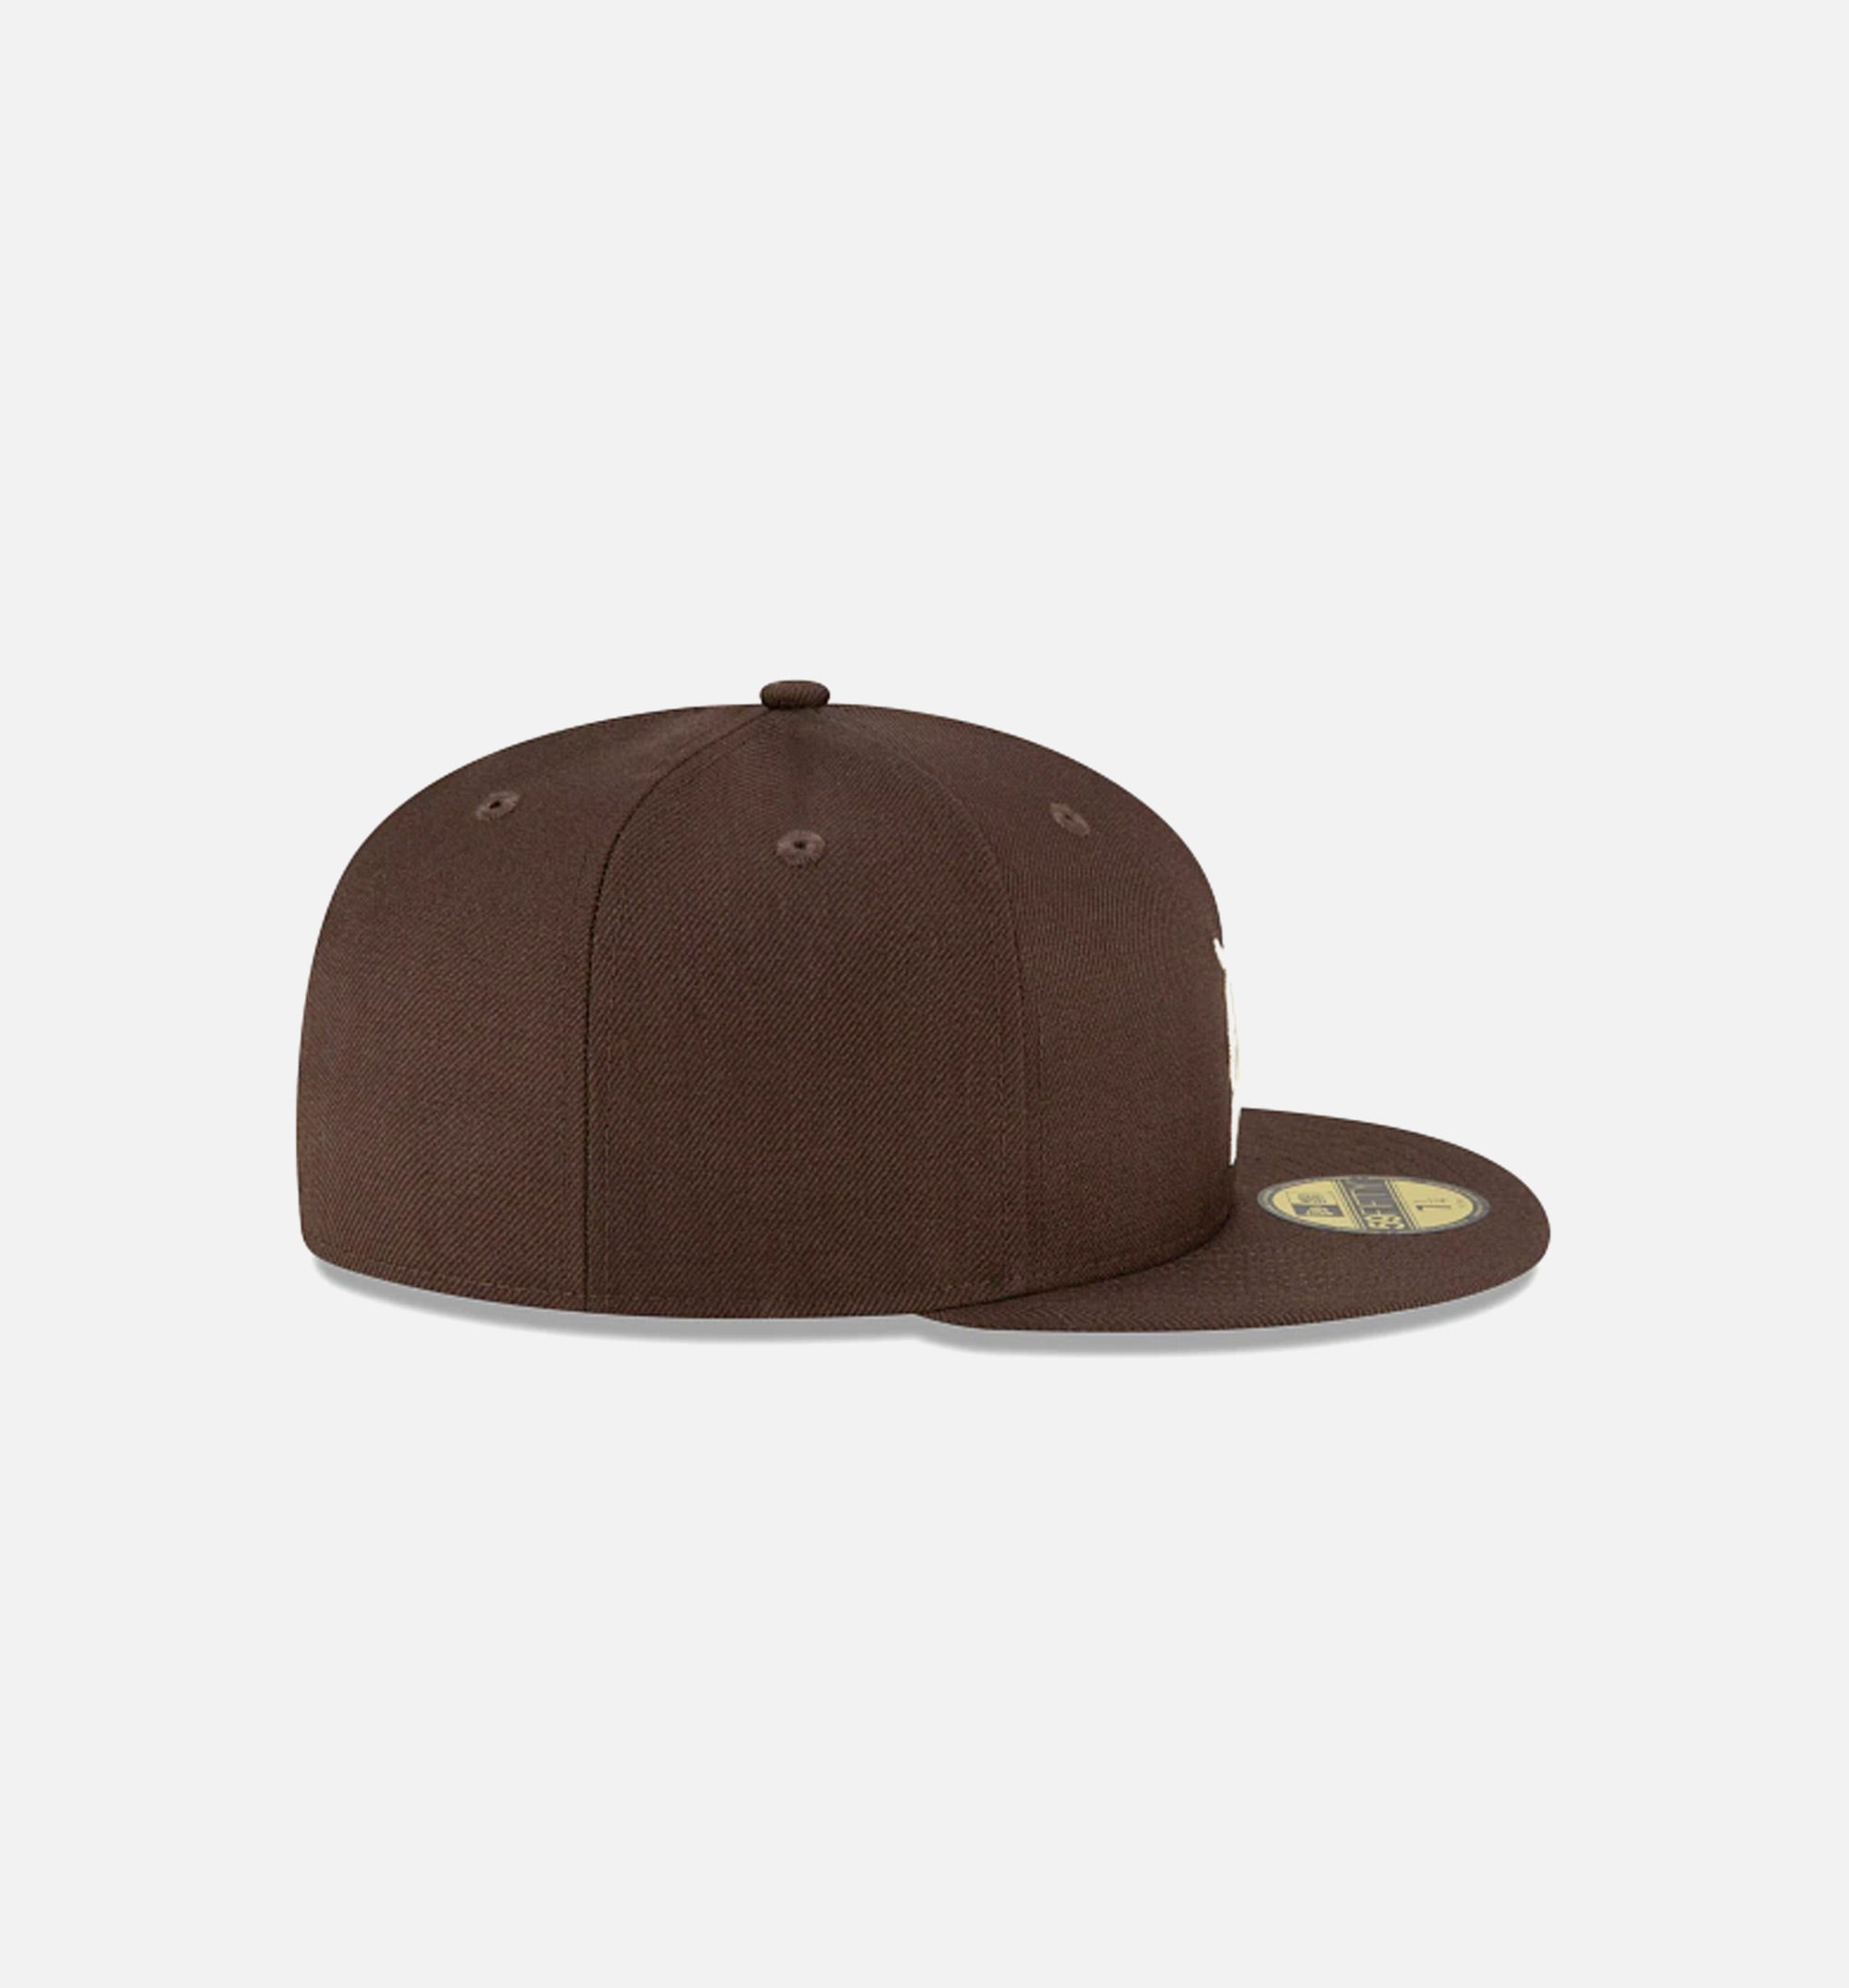 new era brown cap